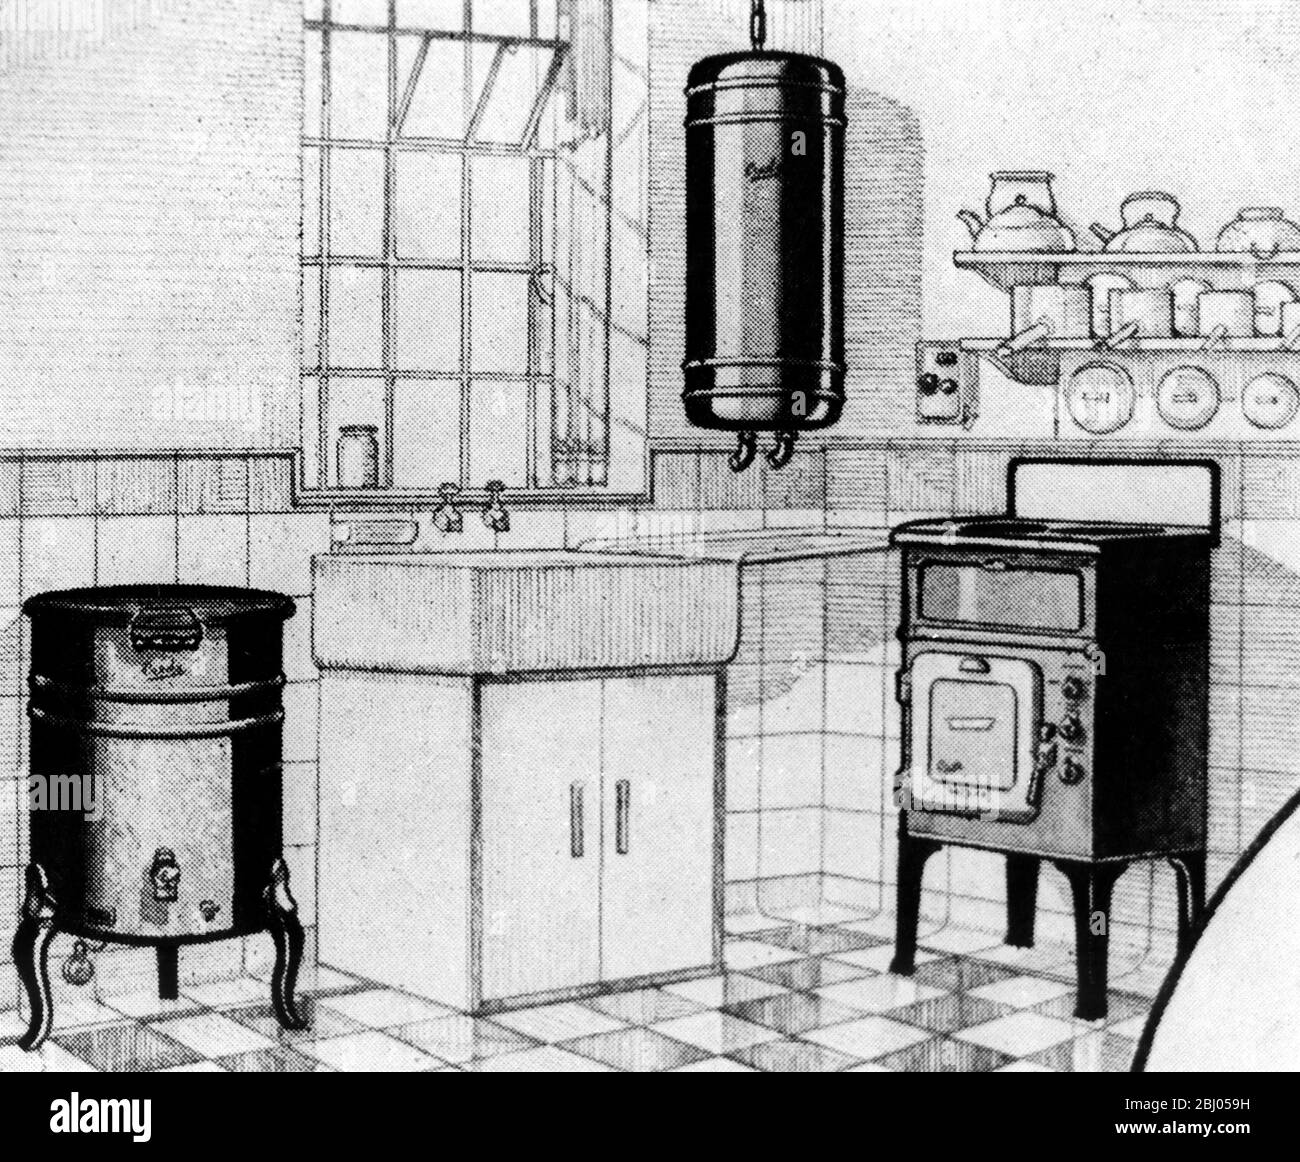 Werbung für Creda Appliances. Ein Creda Elektroherd, Wasserkocher und Wasserkocher für die Küche - zwischen den Kriegen Stockfoto